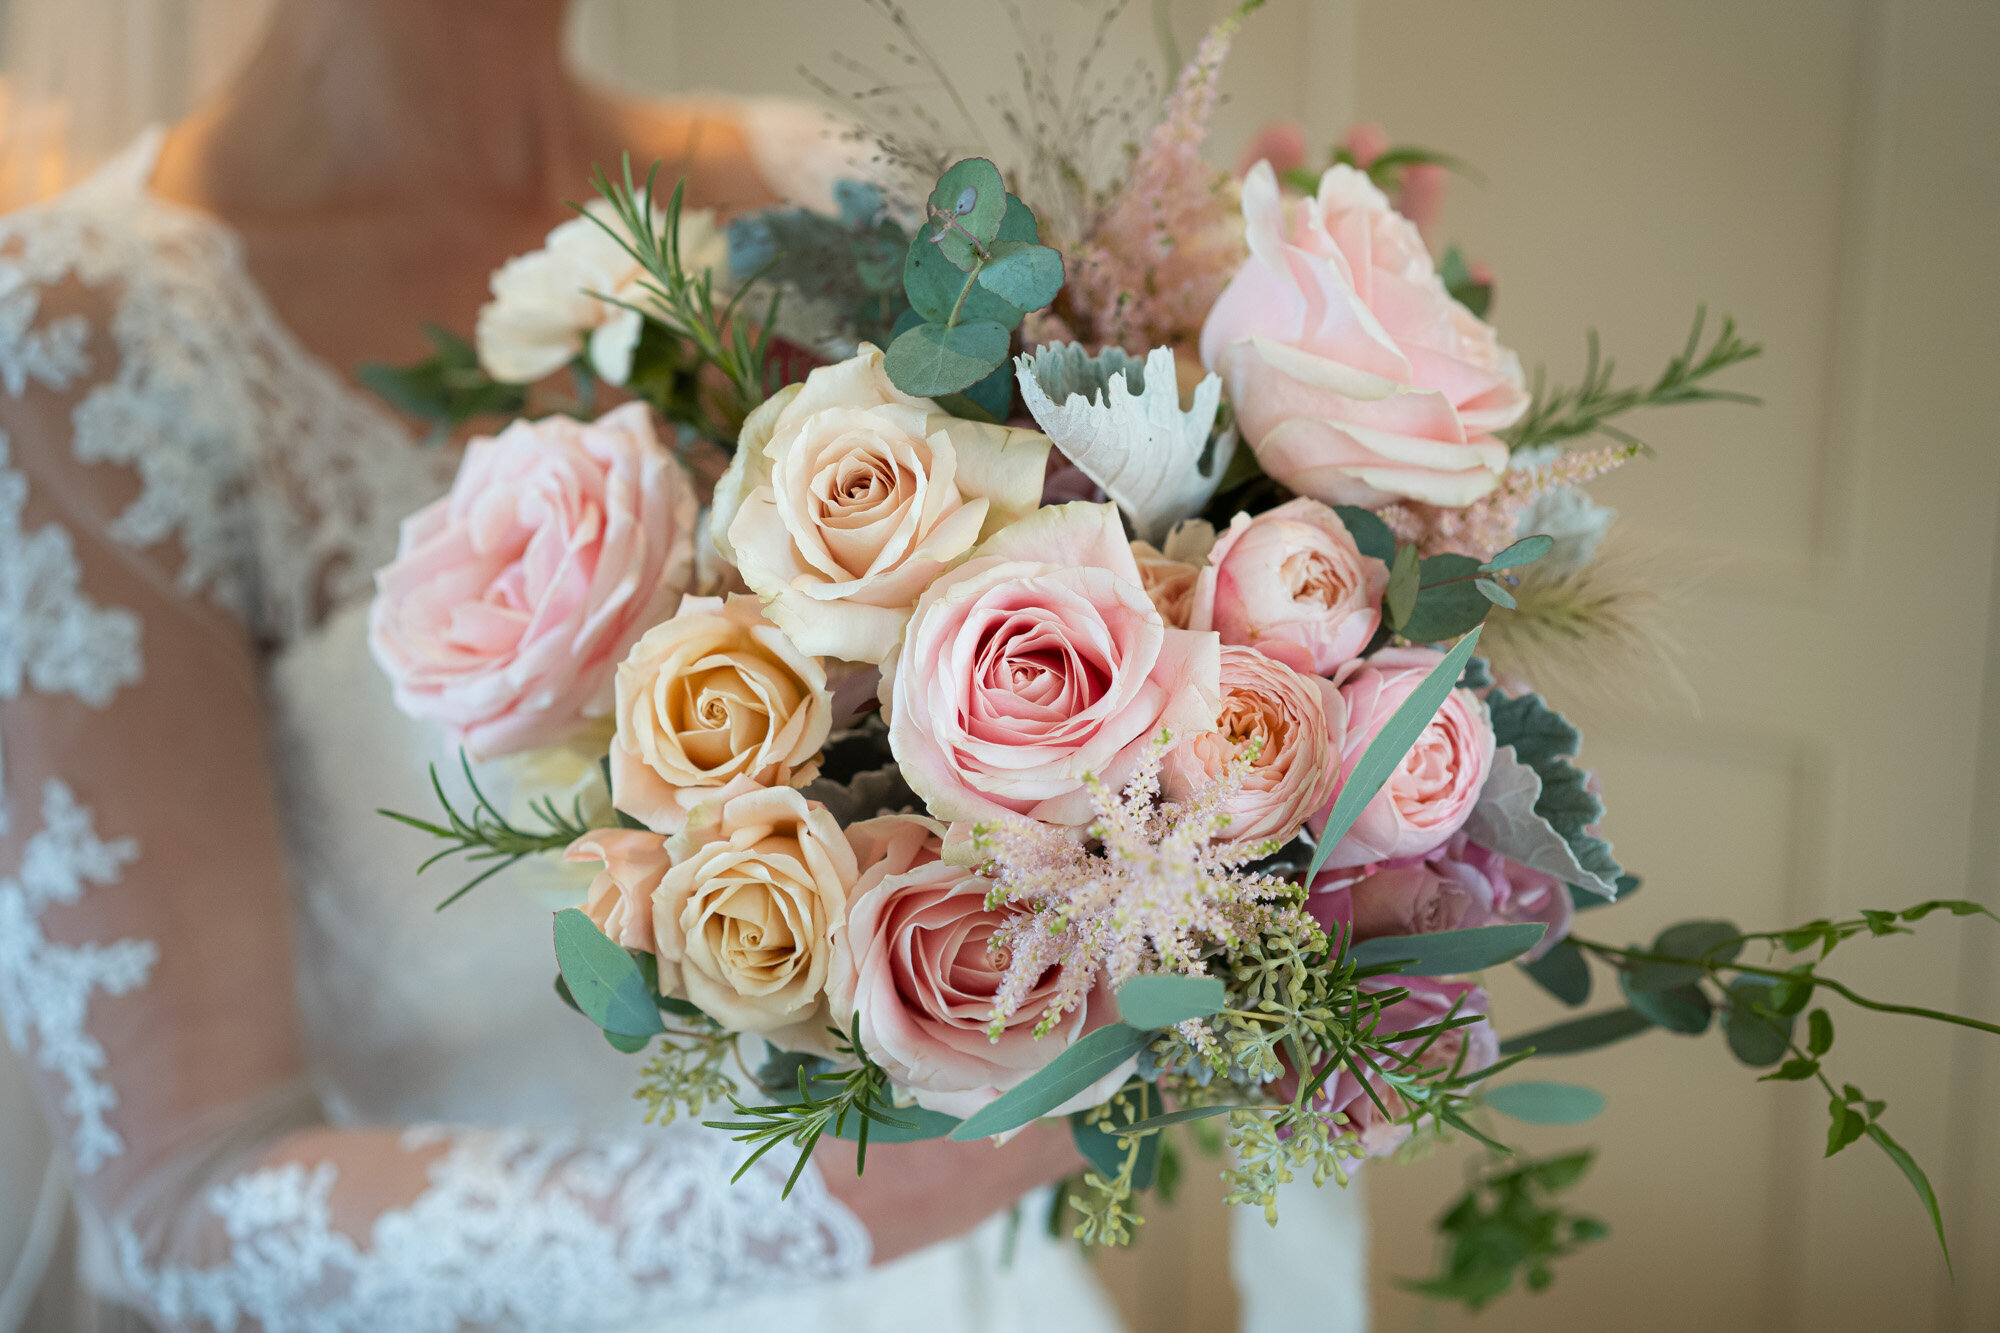 Soft pink rose luxury wedding bouquet